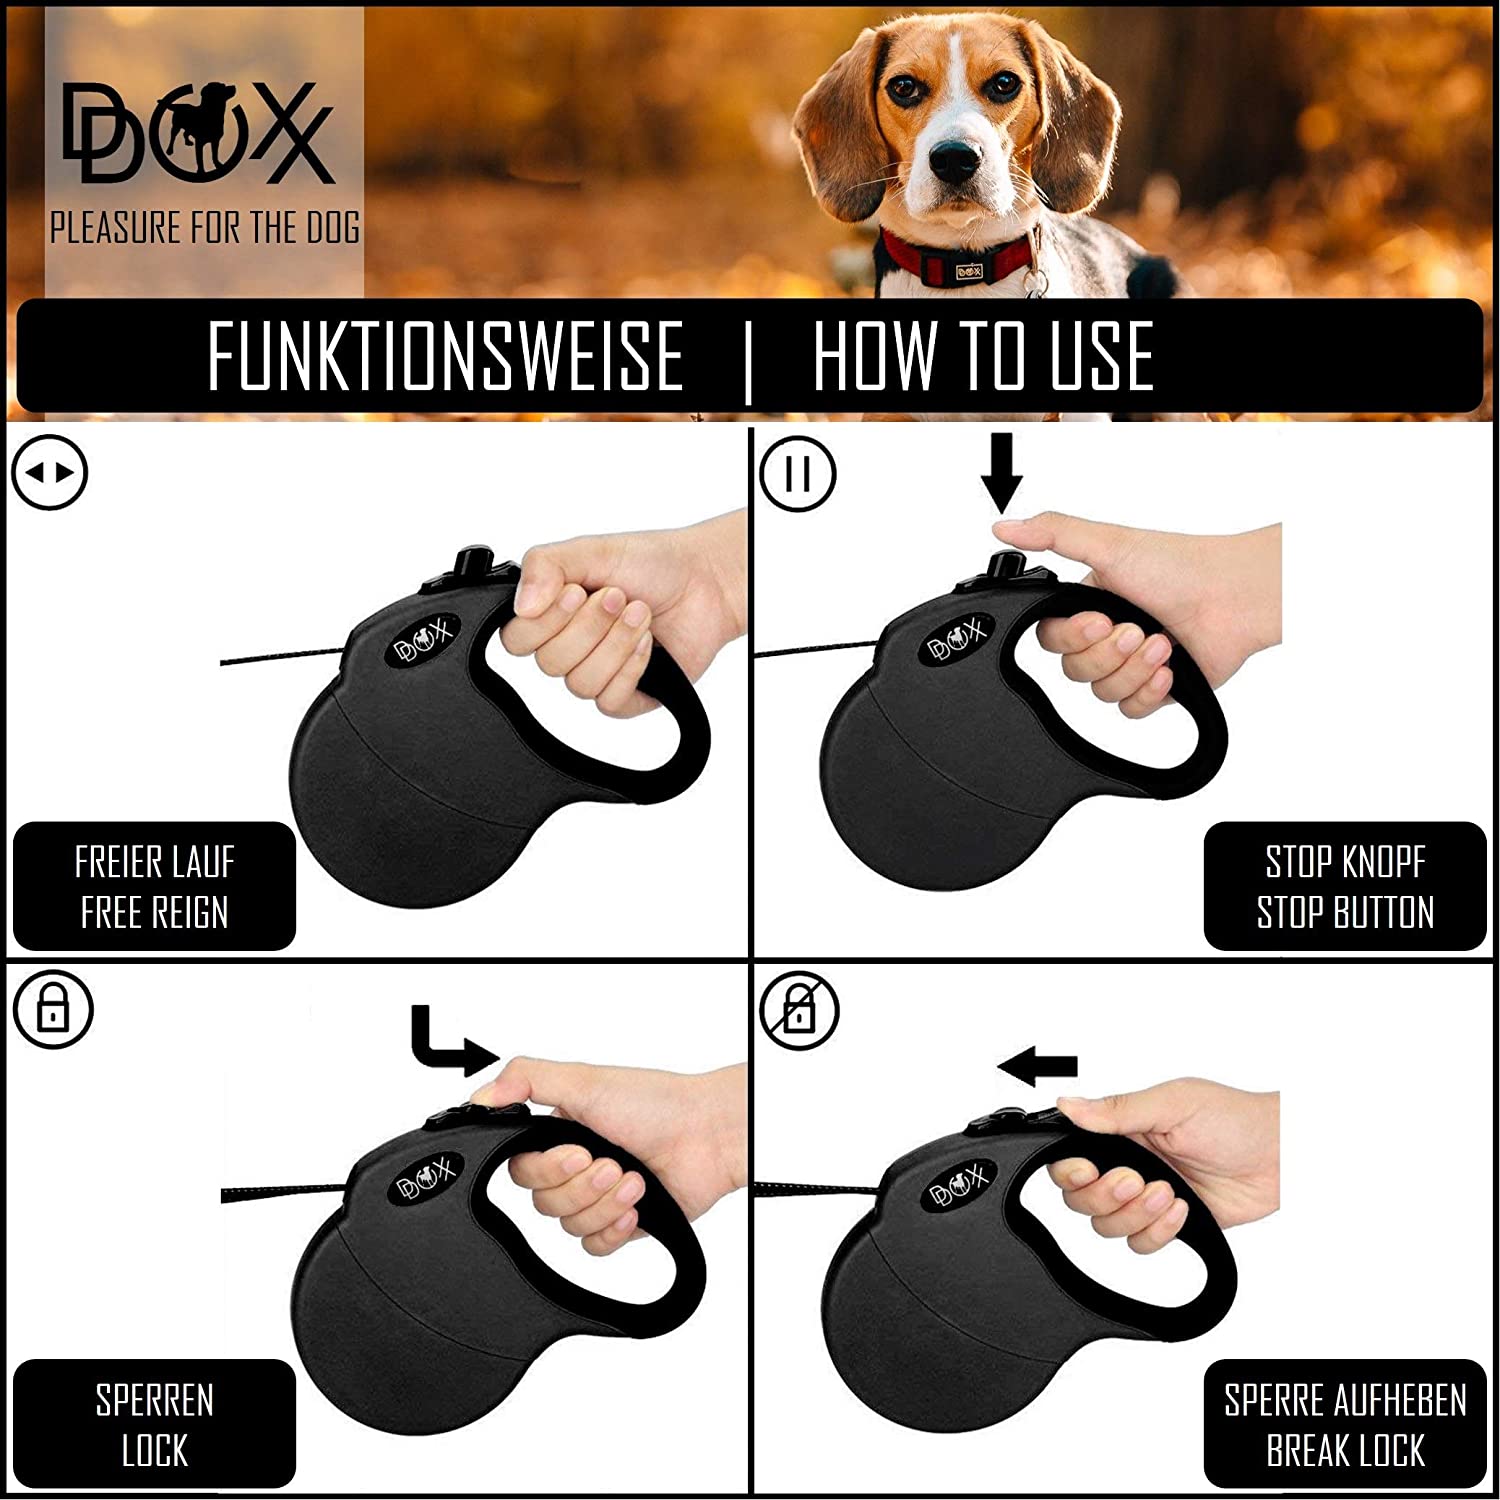  DDOXX Correa Extensible Perro, Reflectante, Retráctil | Diferentes Colores & Tamaños | para Perros Pequeño, Mediano y Grande | Accesorios Gato Cachorro | S, 4 m, 10 kg, Negro 